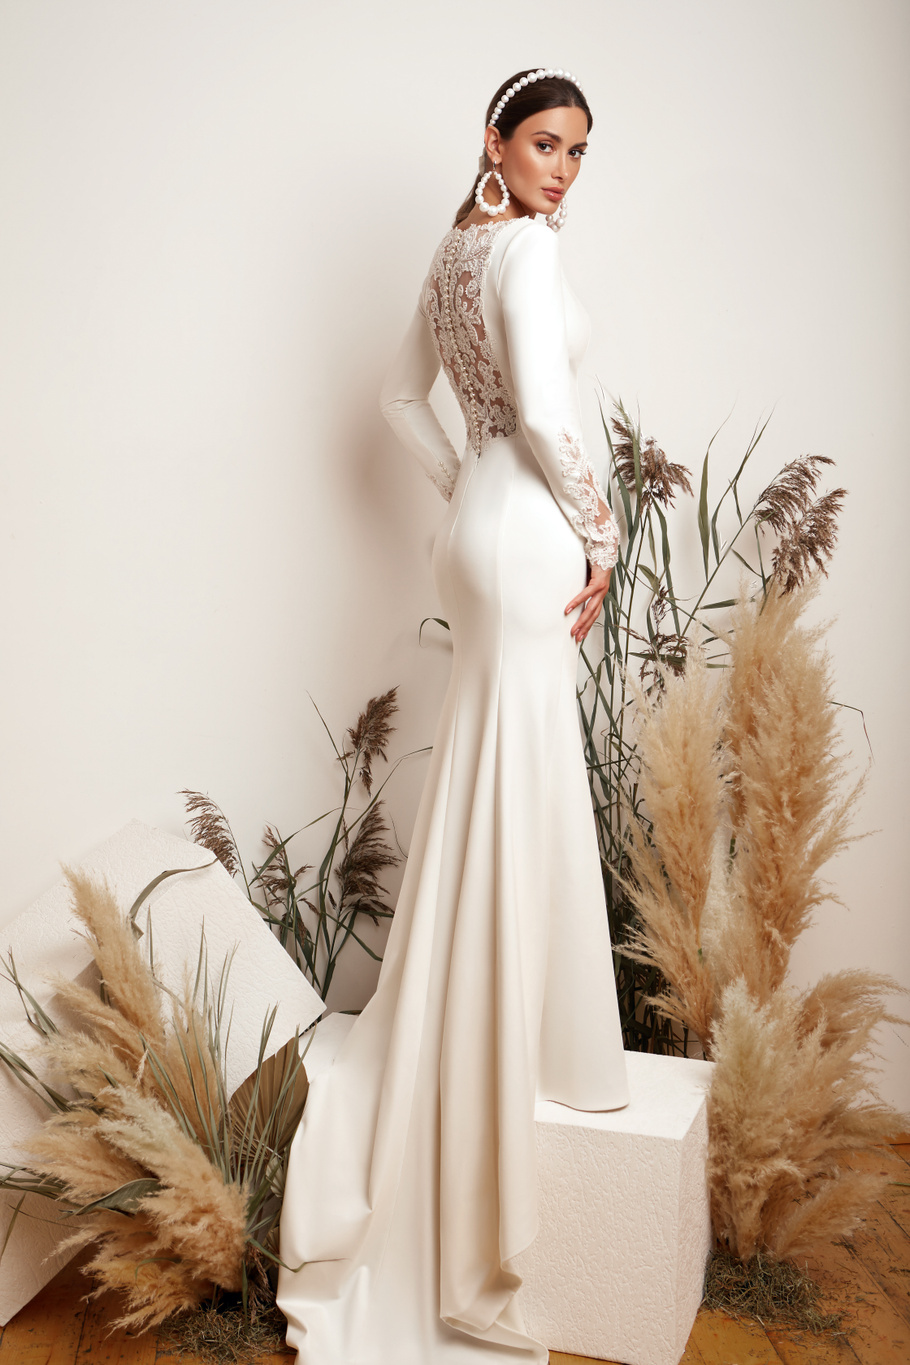 Купить свадебное платье «Джазмин» Мэрри Марк из коллекции 2020 года в Краснодаре